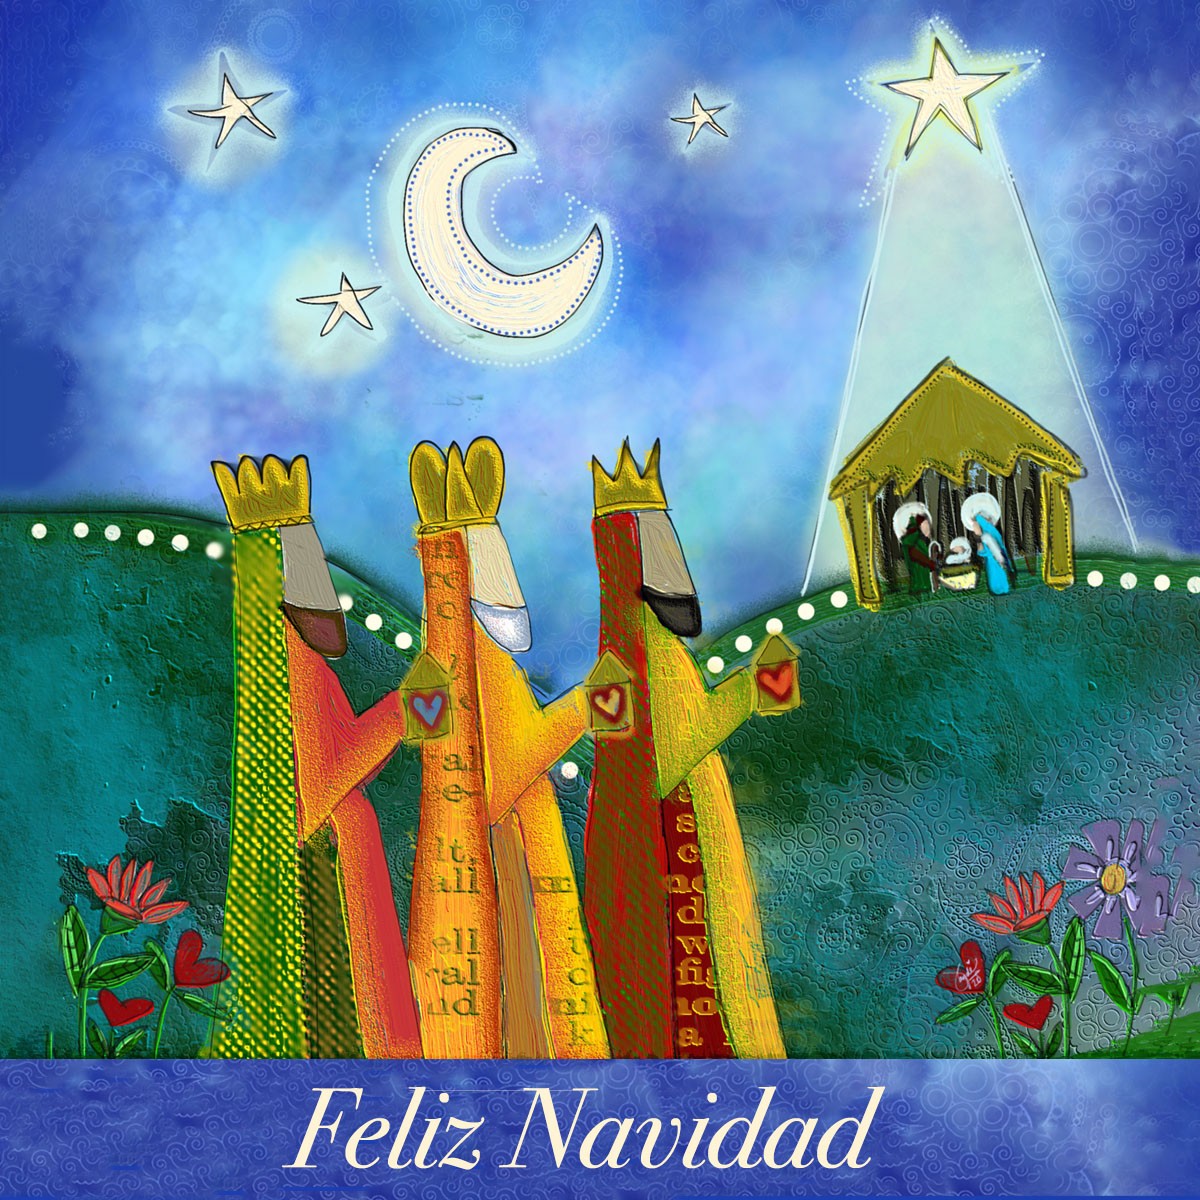 Ilustración al estilo collage de los tres Reyes Magos llevándole regalos al niño Jesús en su día de nacimiento, con un mensaje que dice “Feliz Navidad”.